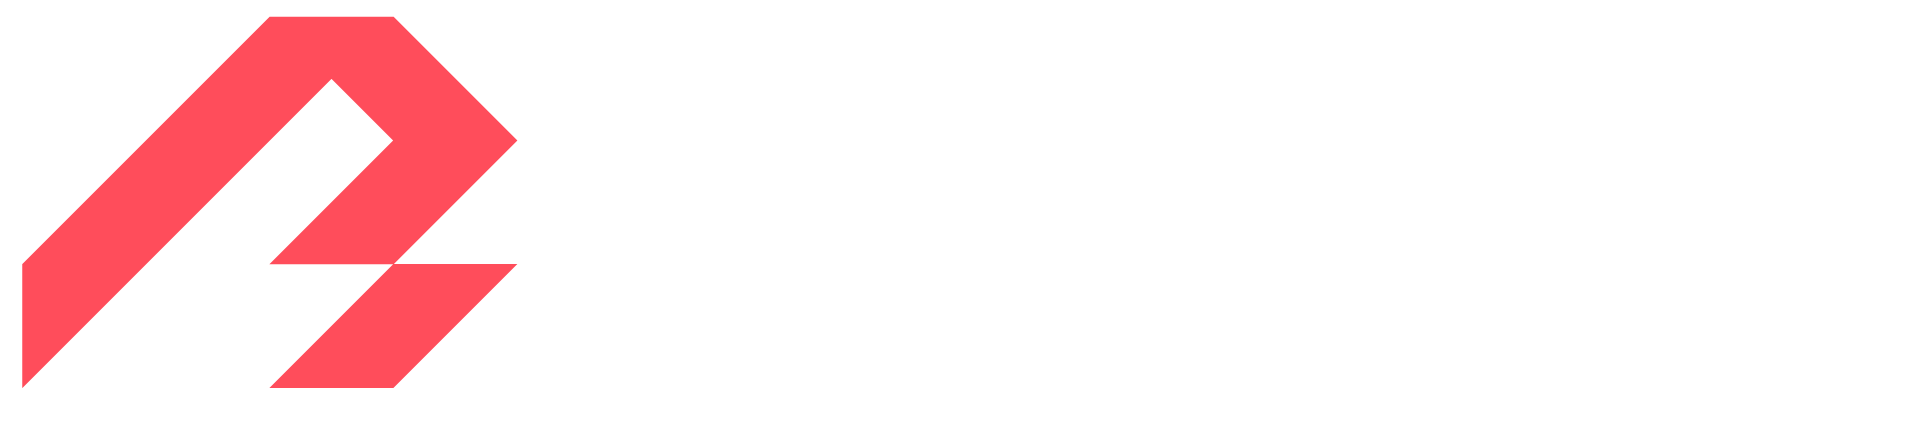 Bulder Logo